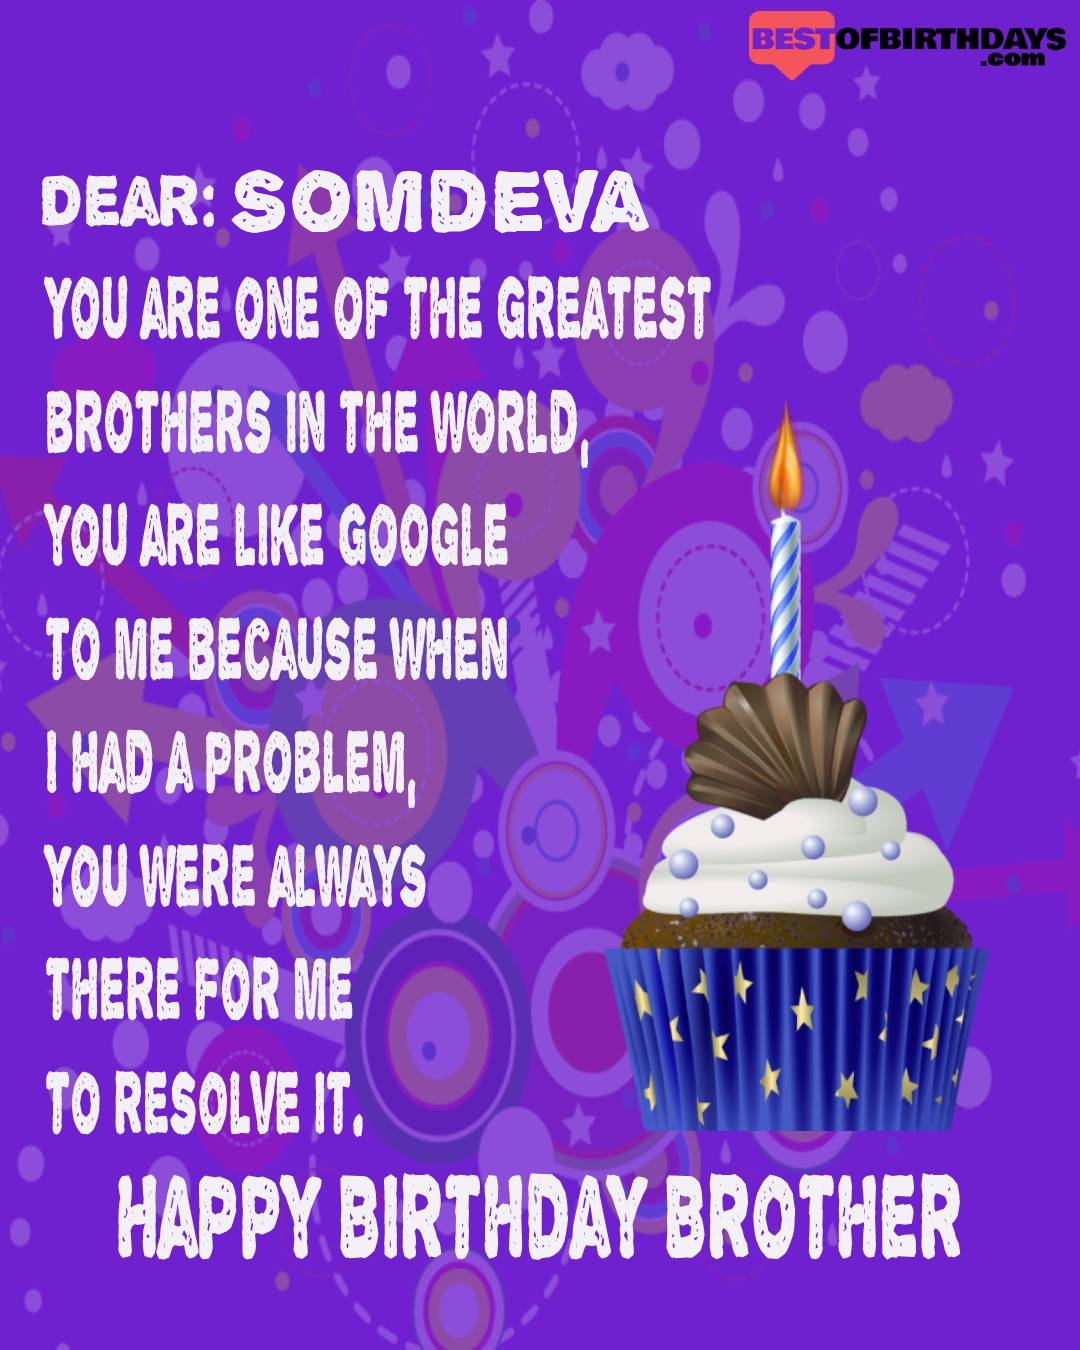 Happy birthday somdeva bhai brother bro